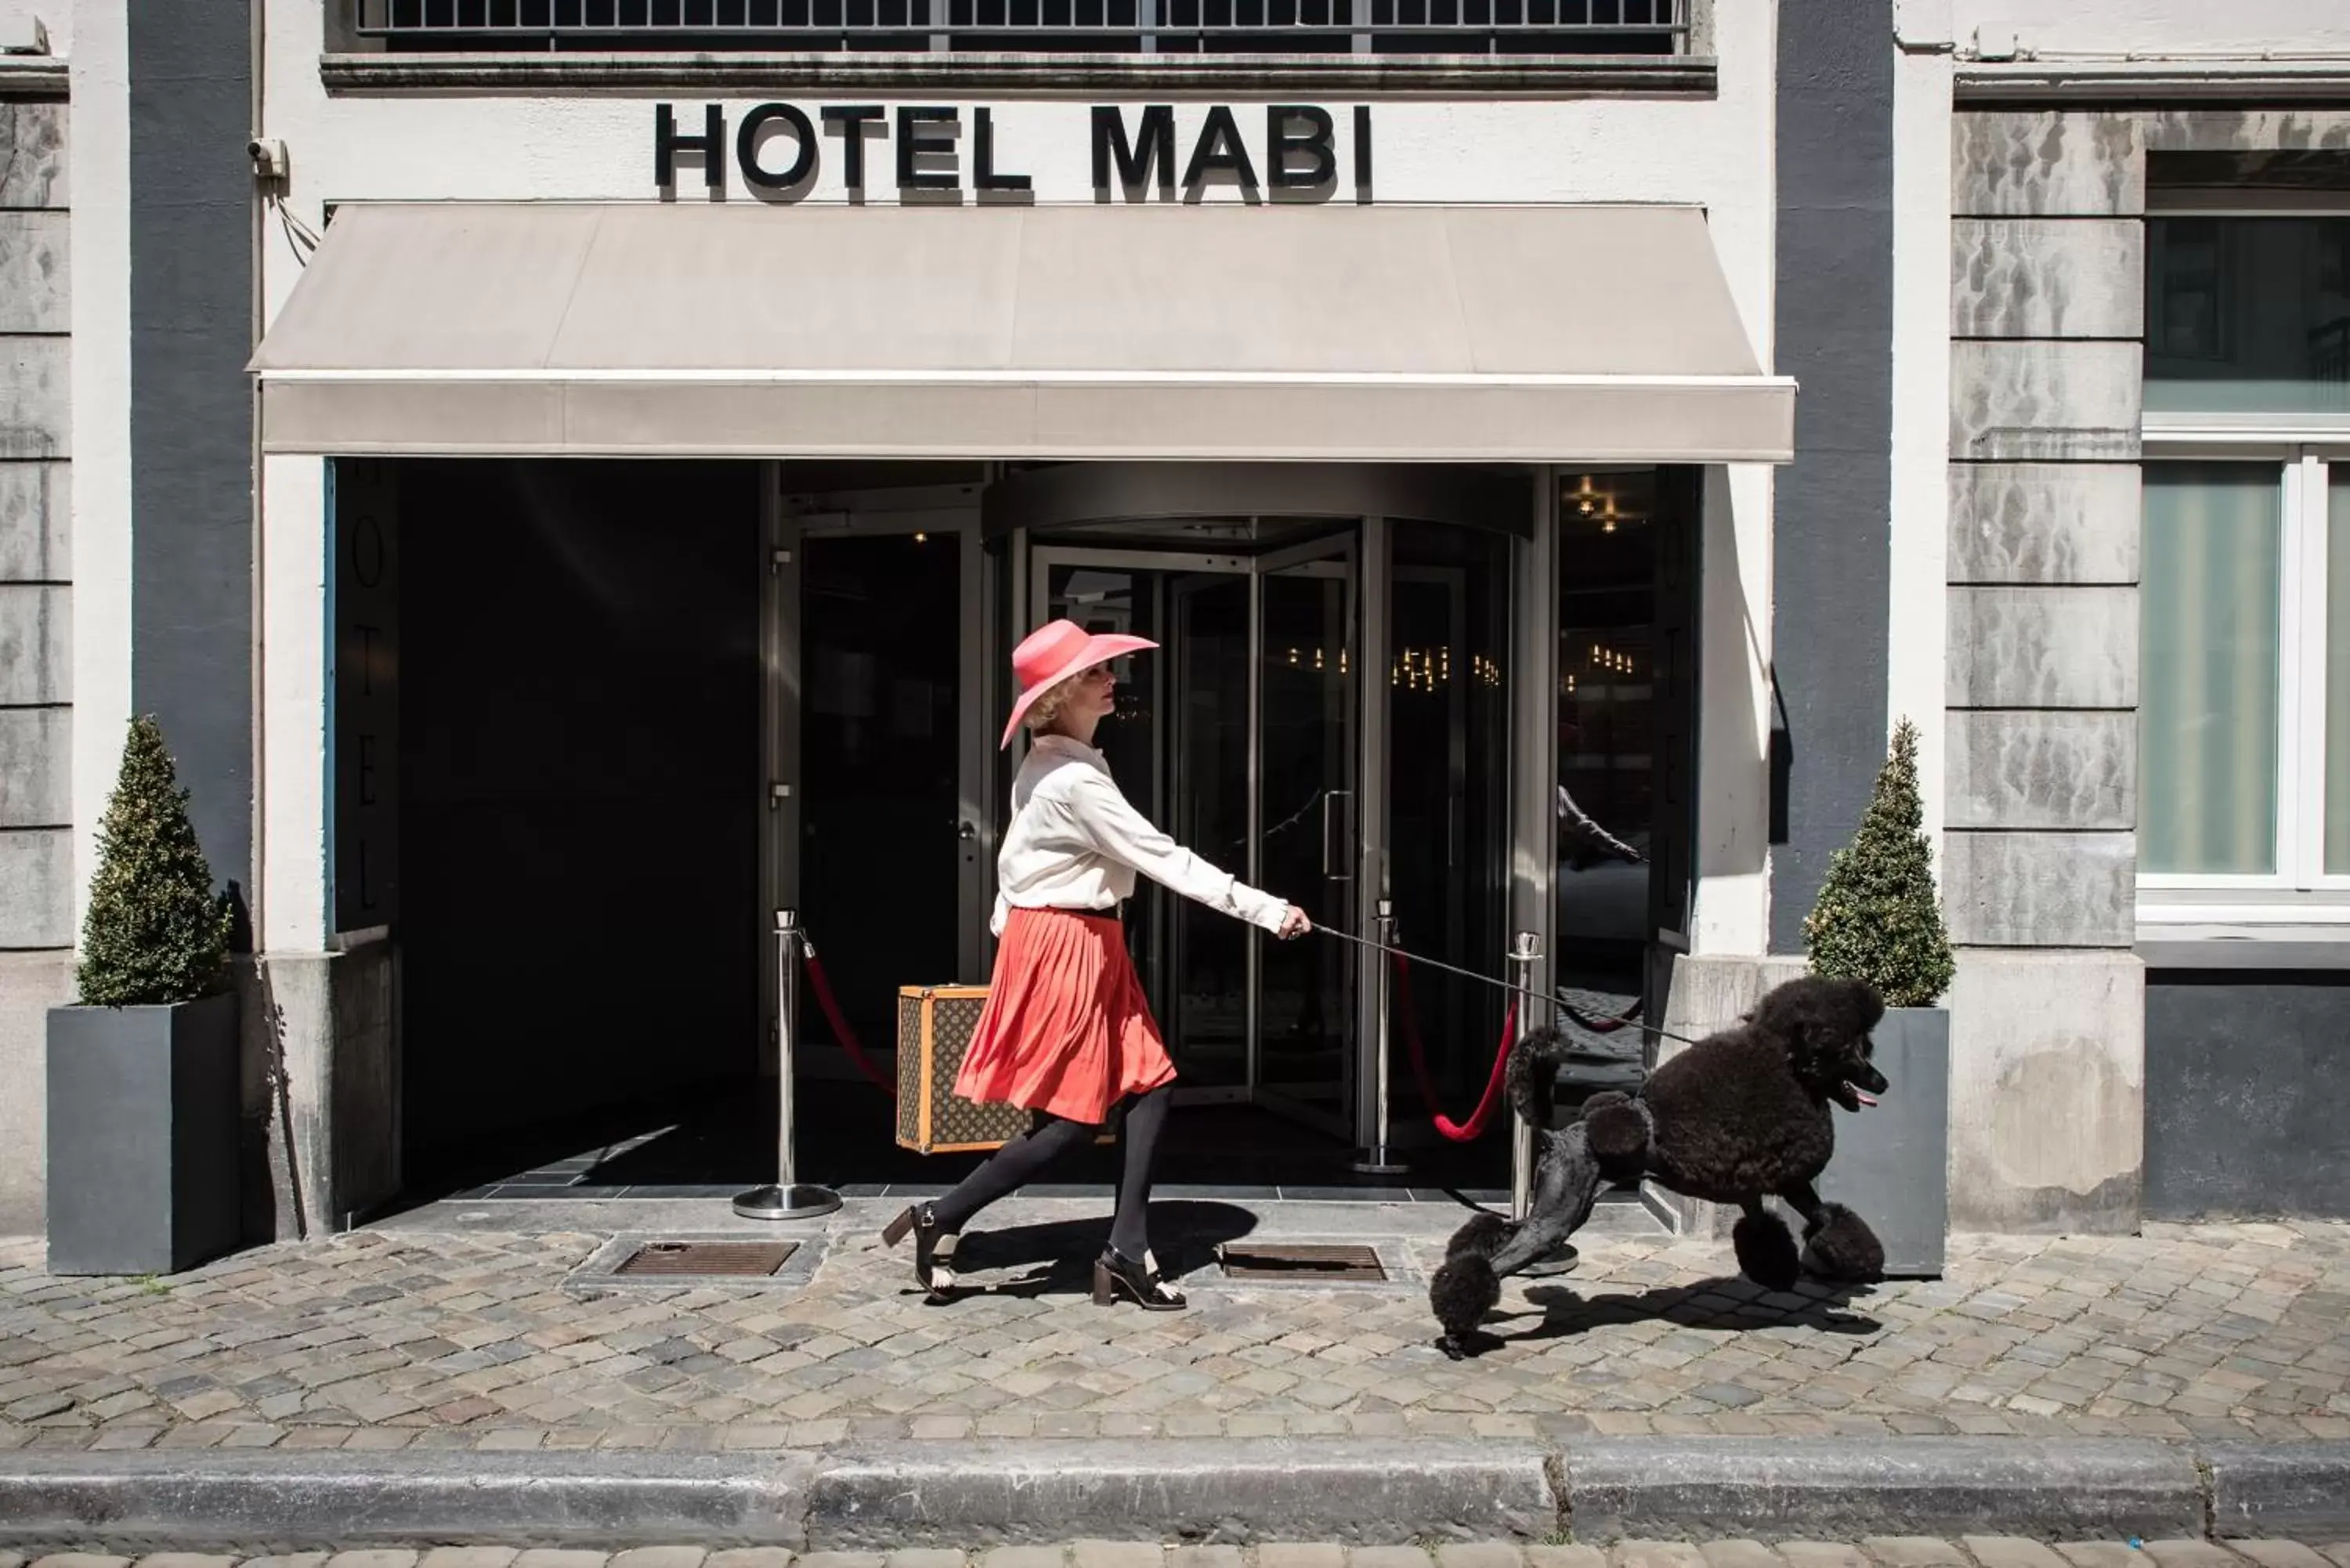 Facade/entrance in Mabi City Centre Hotel